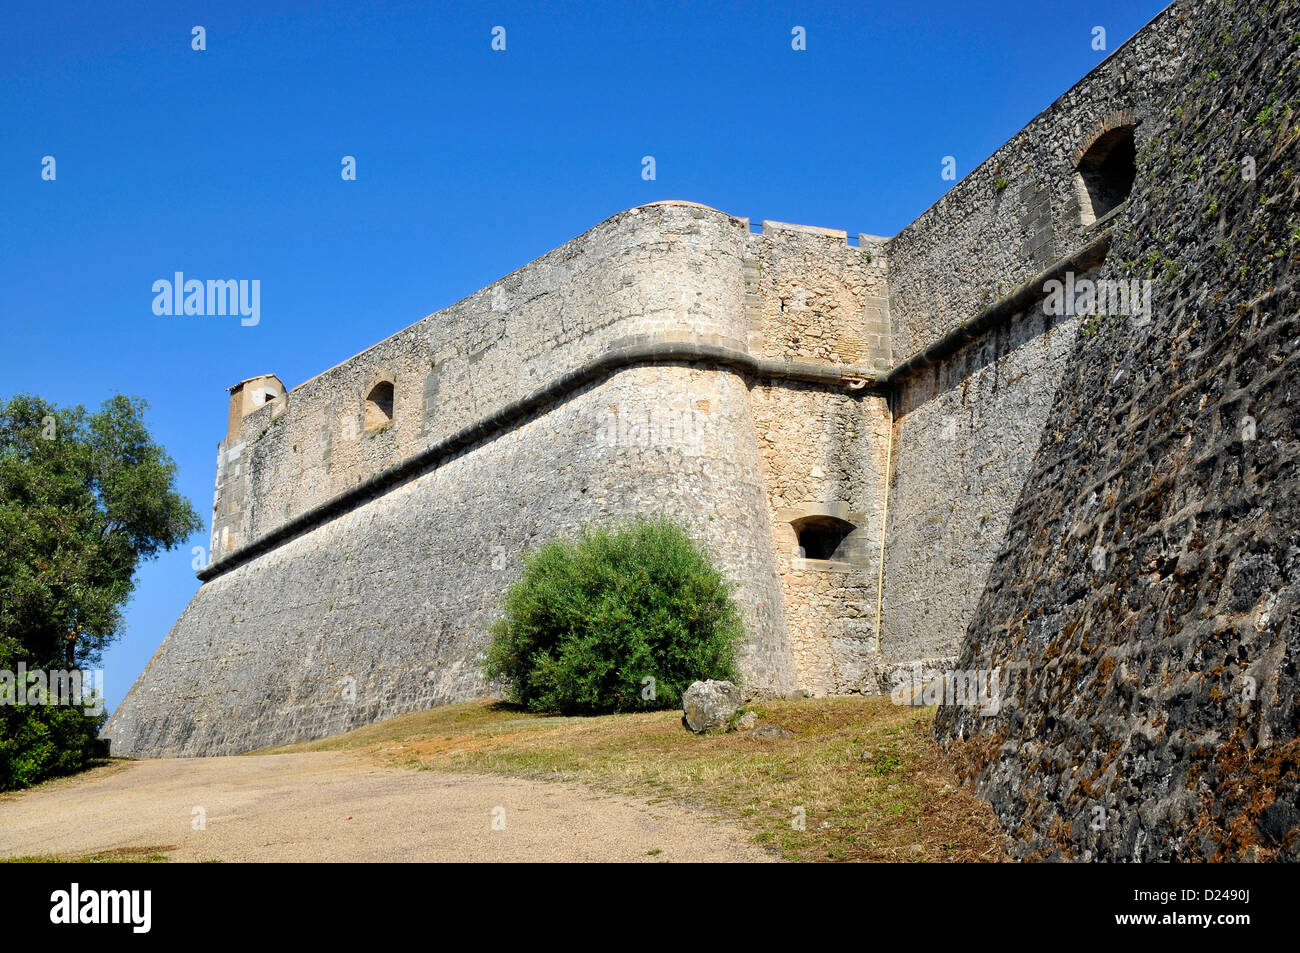 Das Fort Carré von Antibes im Südosten Frankreichs, Alpes-Maritimes Abteilung von Vauban erbaut Stockfoto